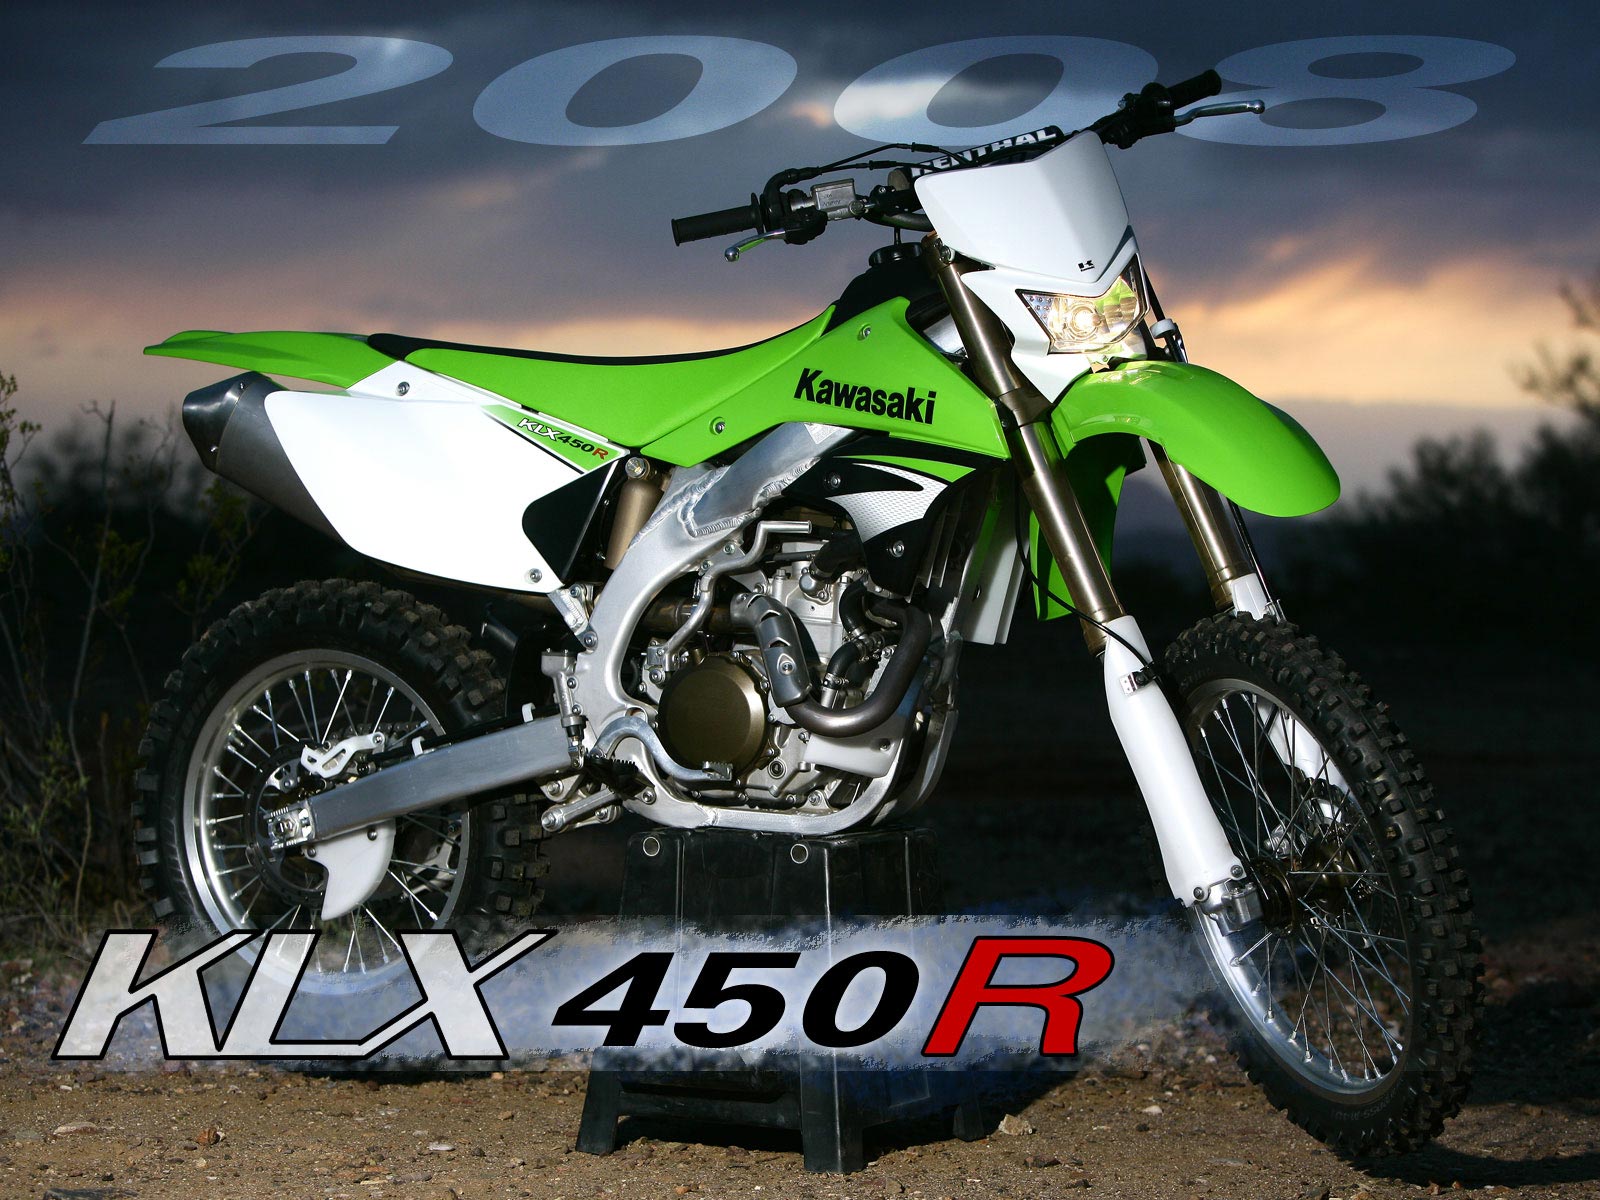 Kawasaki klx450r